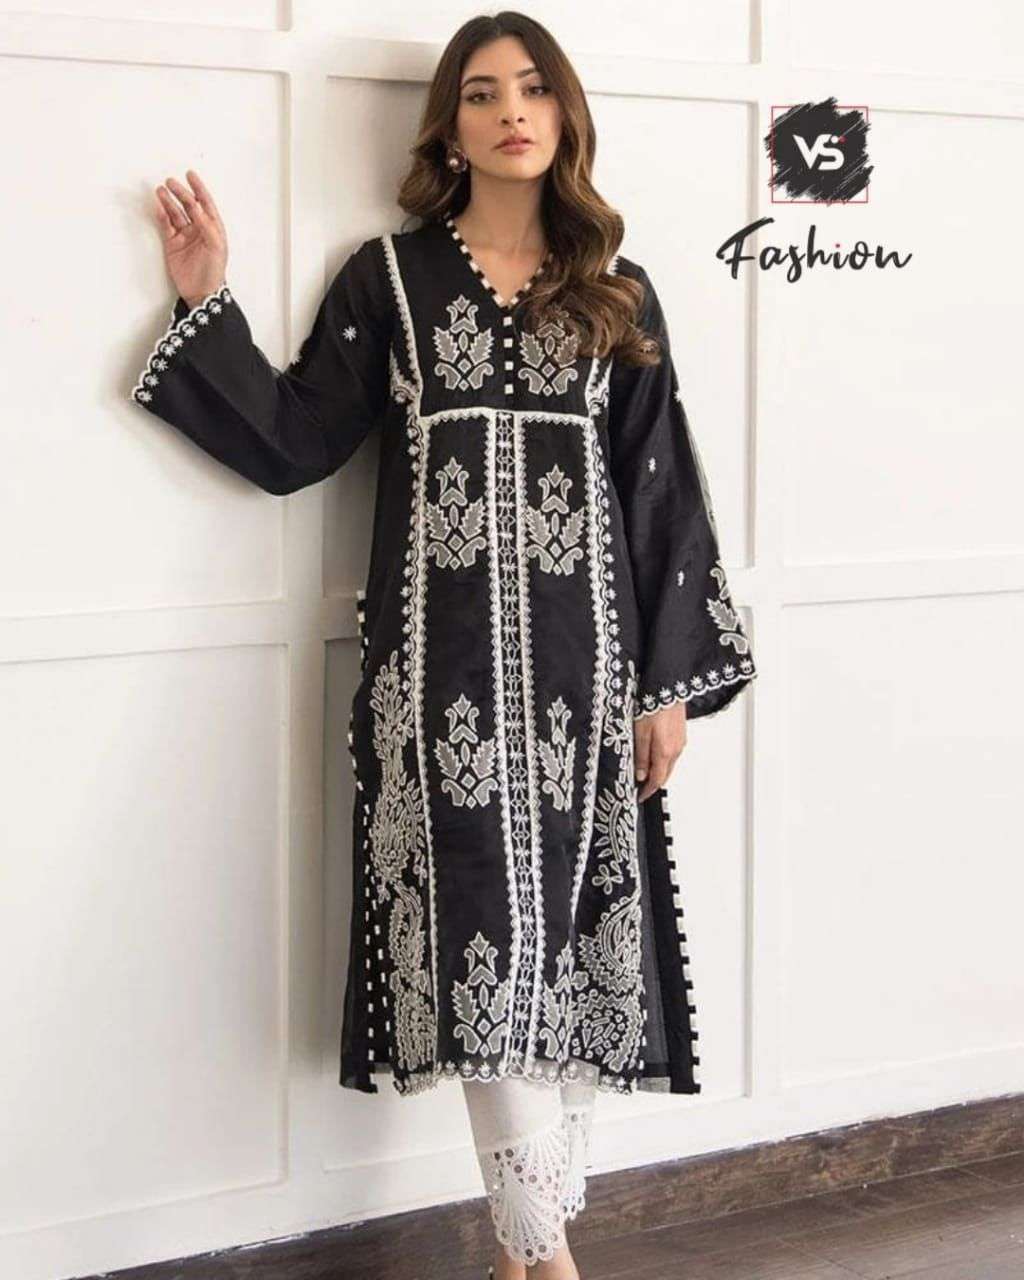 vs 604 elegant look readymade pakistani dresses